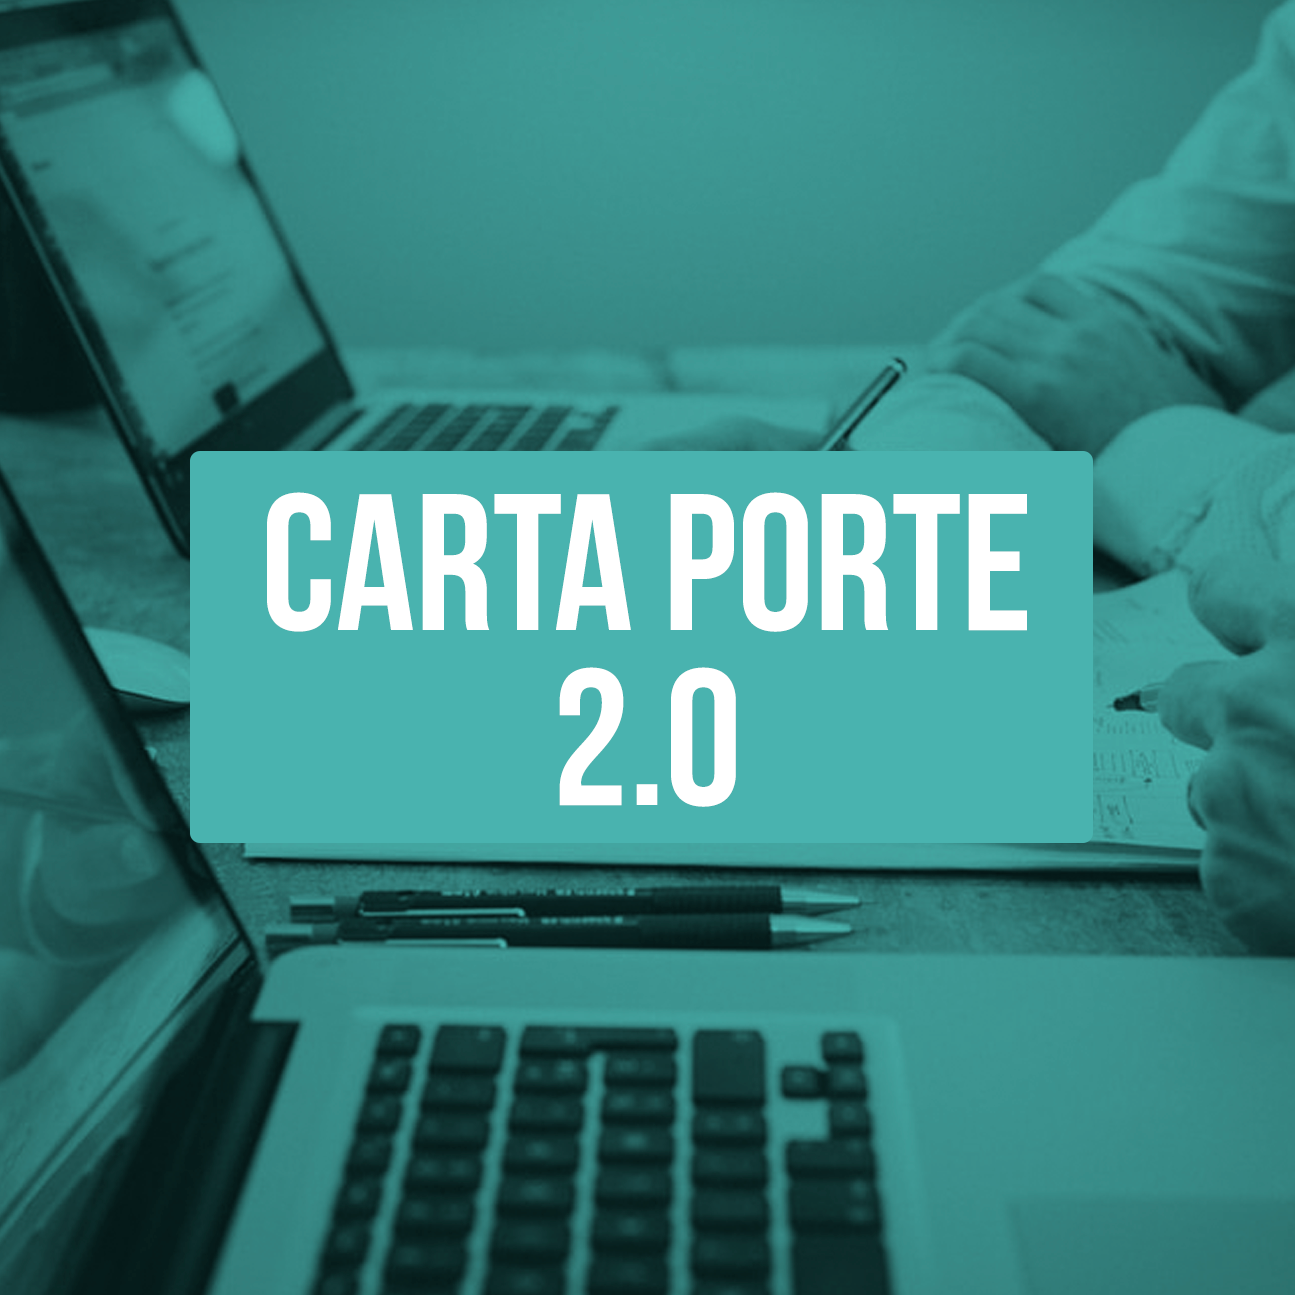 Complemento Carta Porte versión 2.0